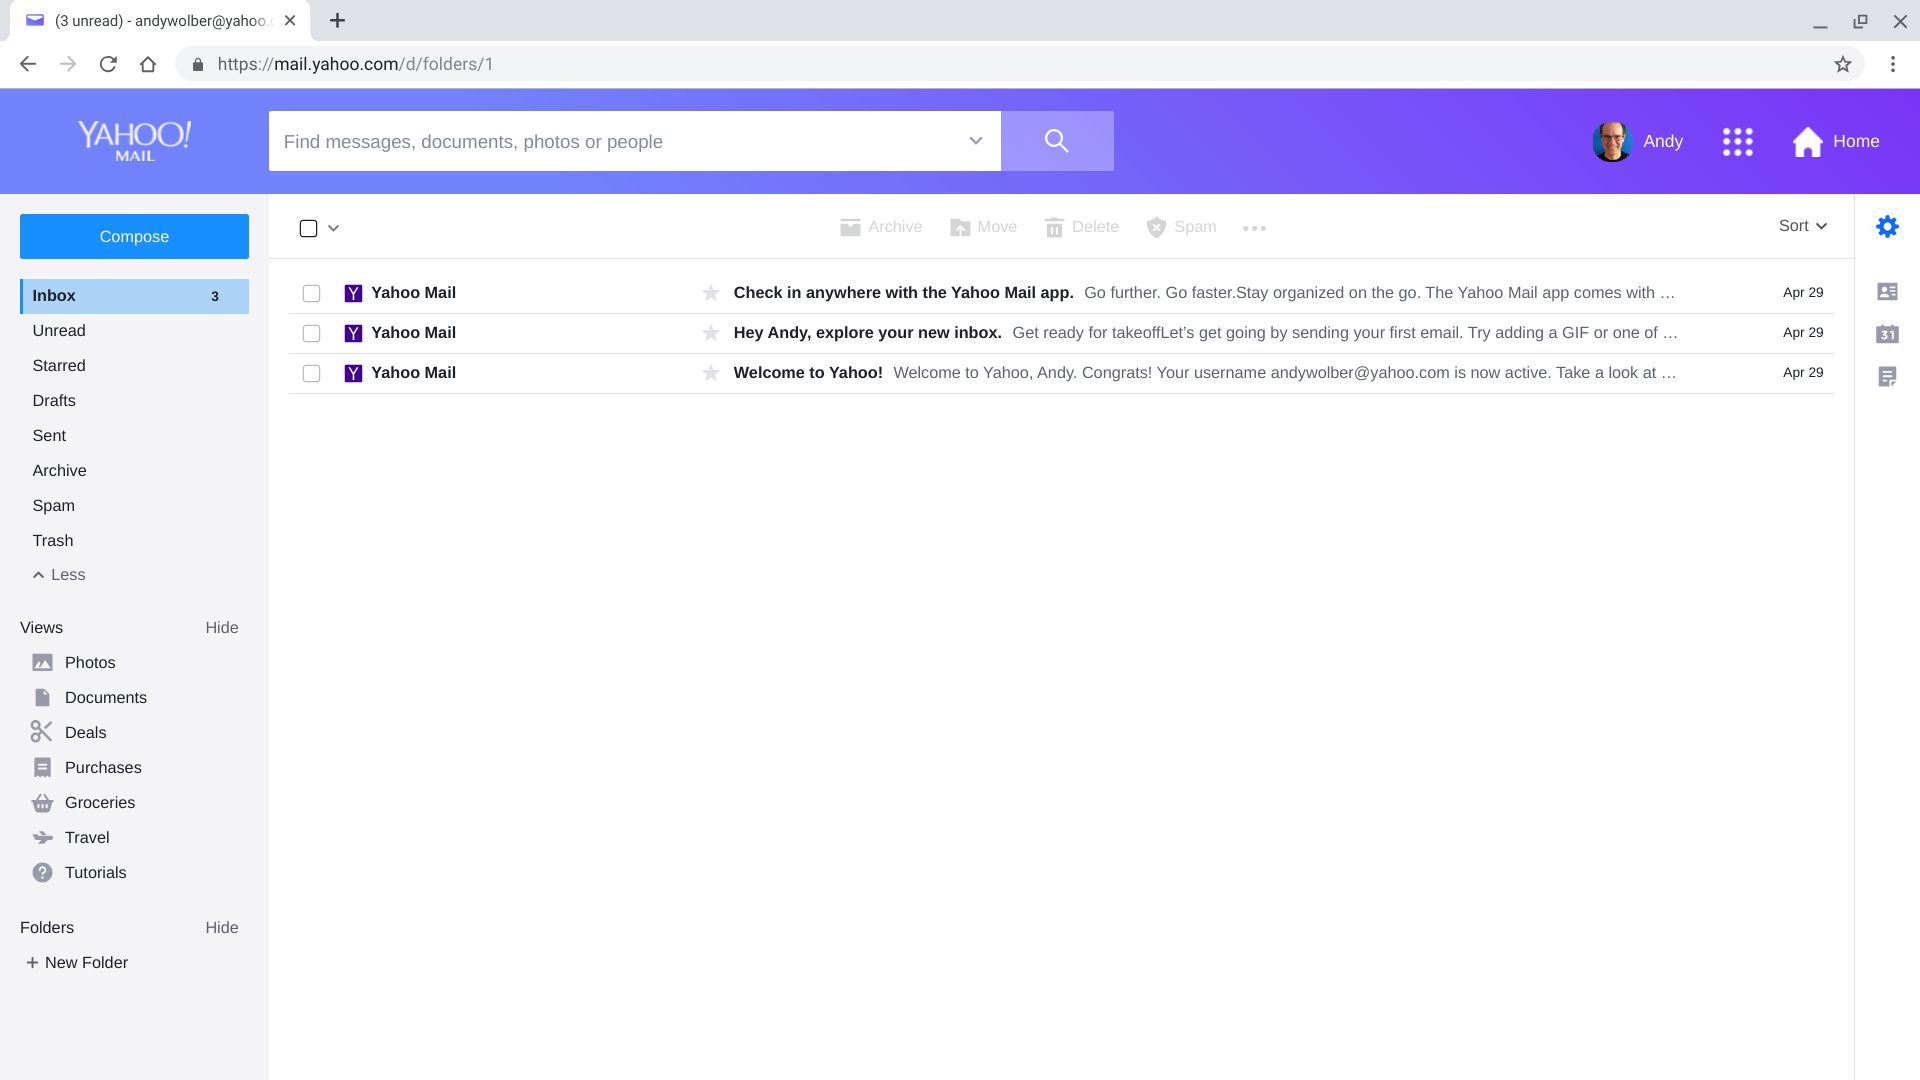 Снимок экрана Yahoo Mail с выделенной настройкой Gear в правом верхнем углу